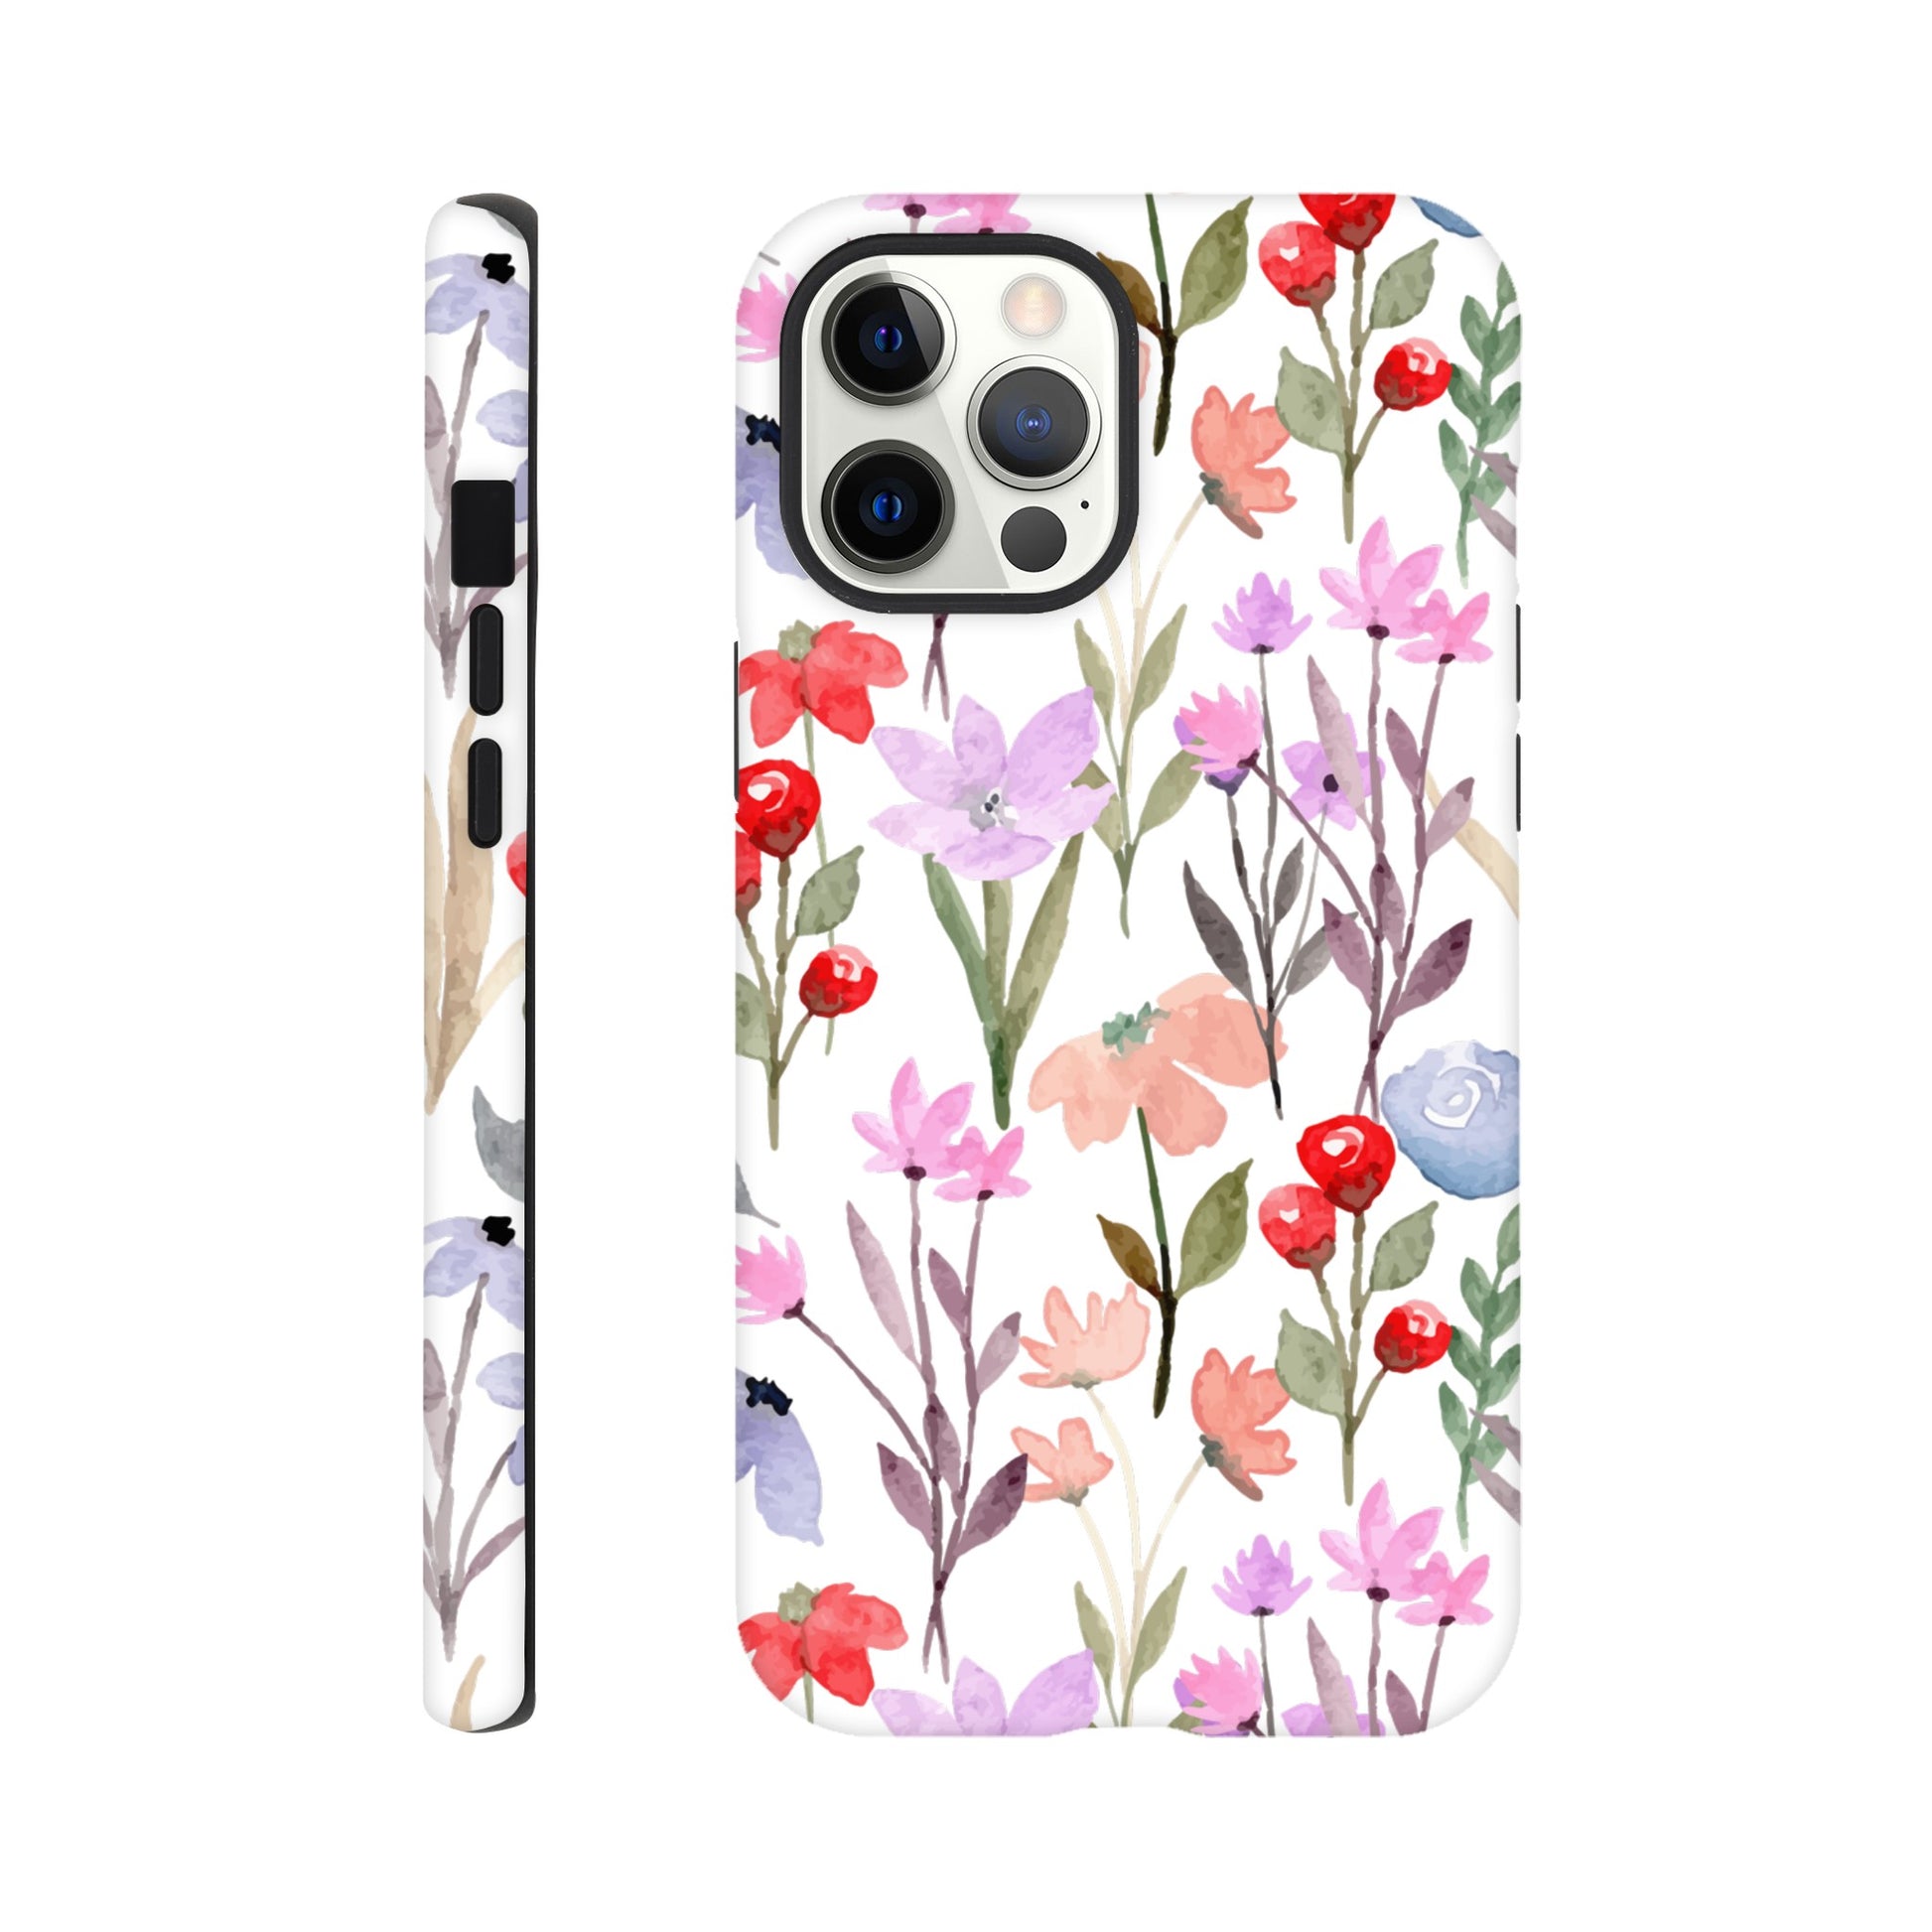 Watercolour Flowers - Phone Tough Case iPhone 12 Pro Max Phone Case Plants